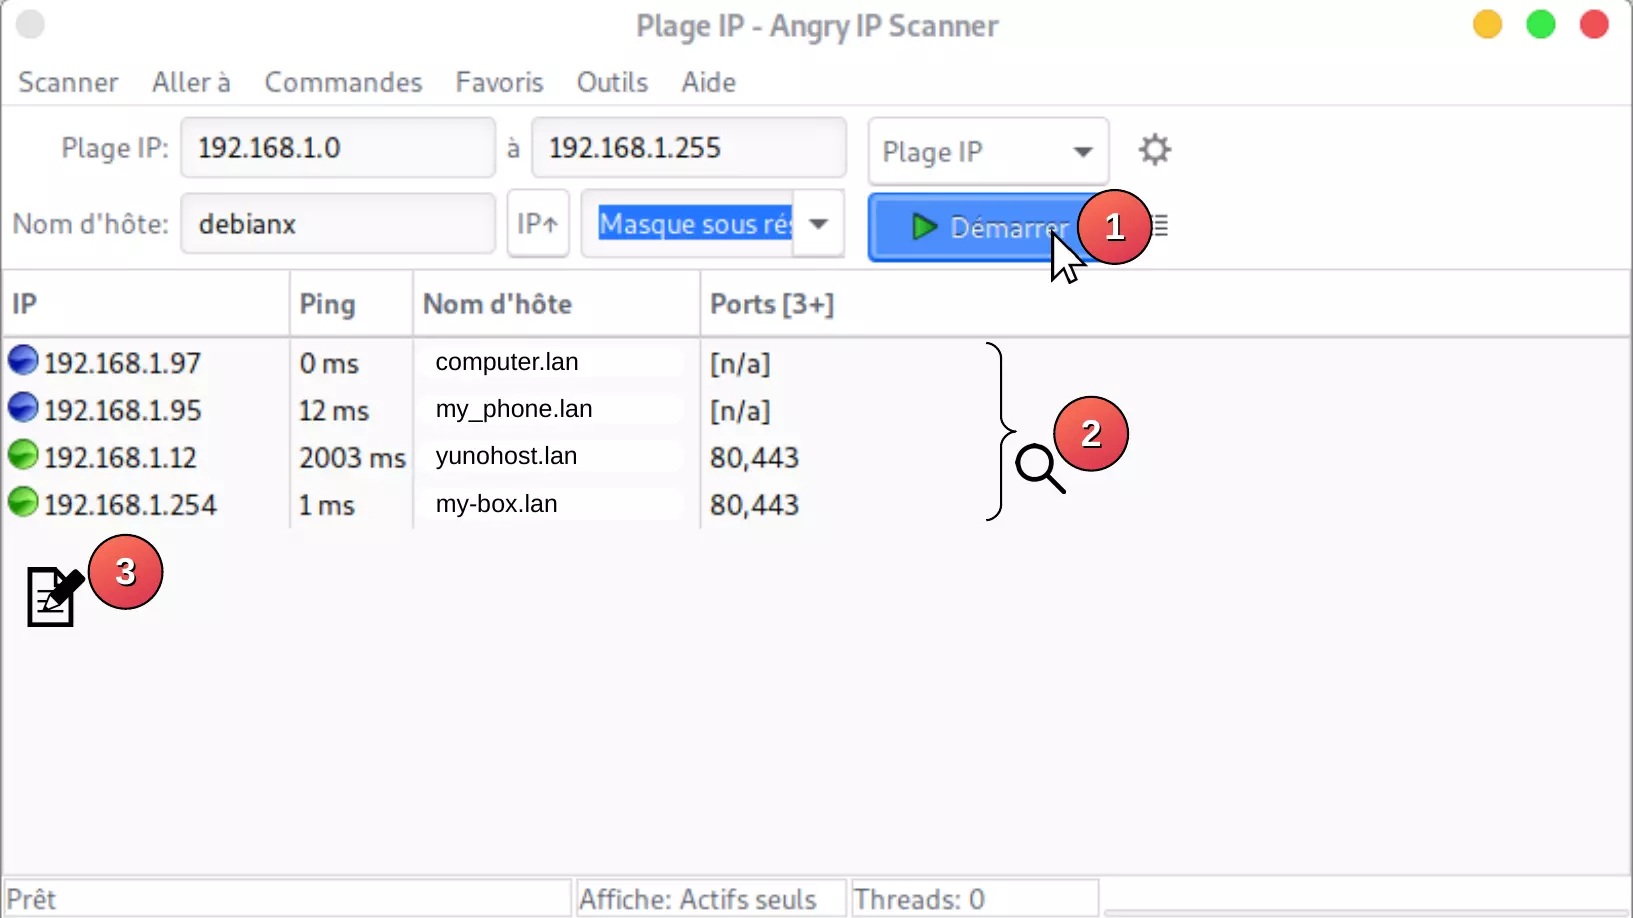 angry_ip_scanner_usage.webp